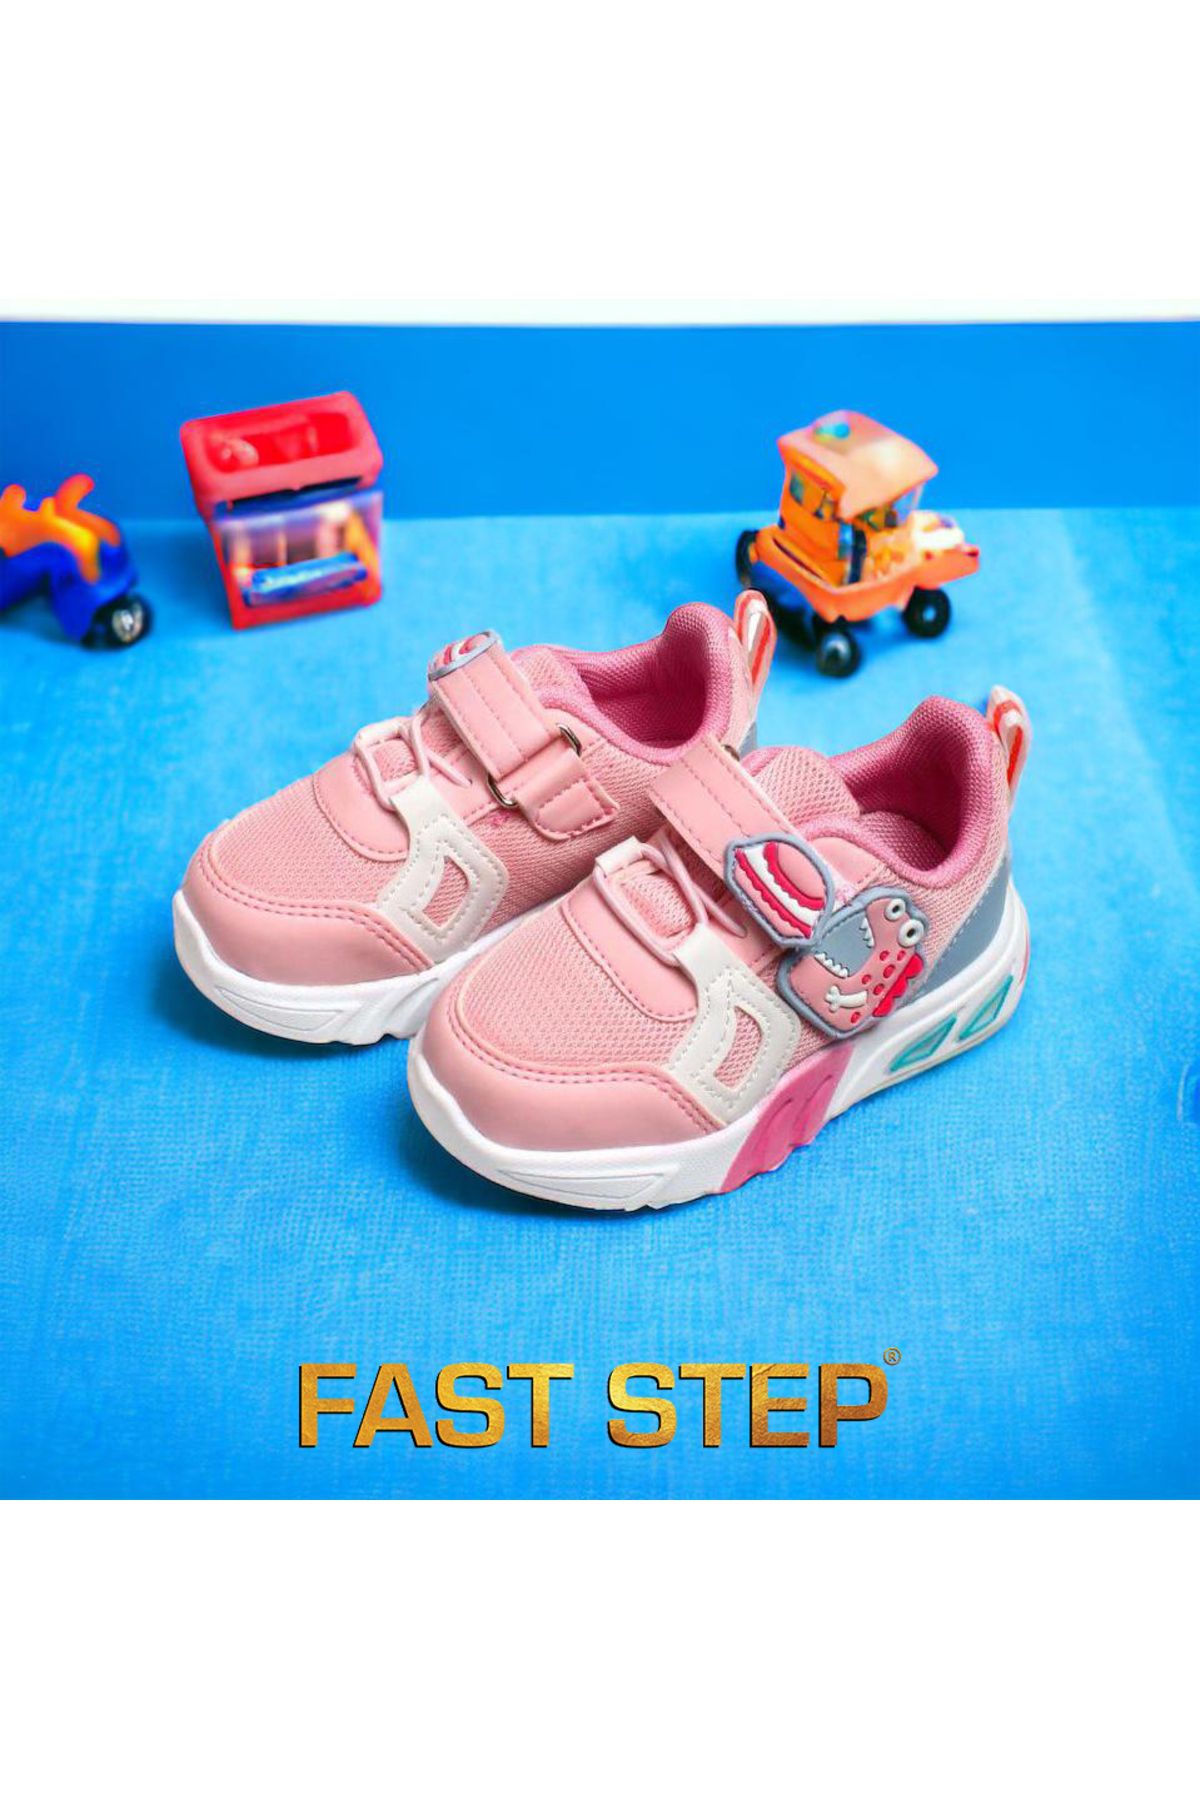 Fast Step Unisex Işıklı Bebek Spor Hafif Taban Sneaker Yazlık Ayakkabı 461ba105